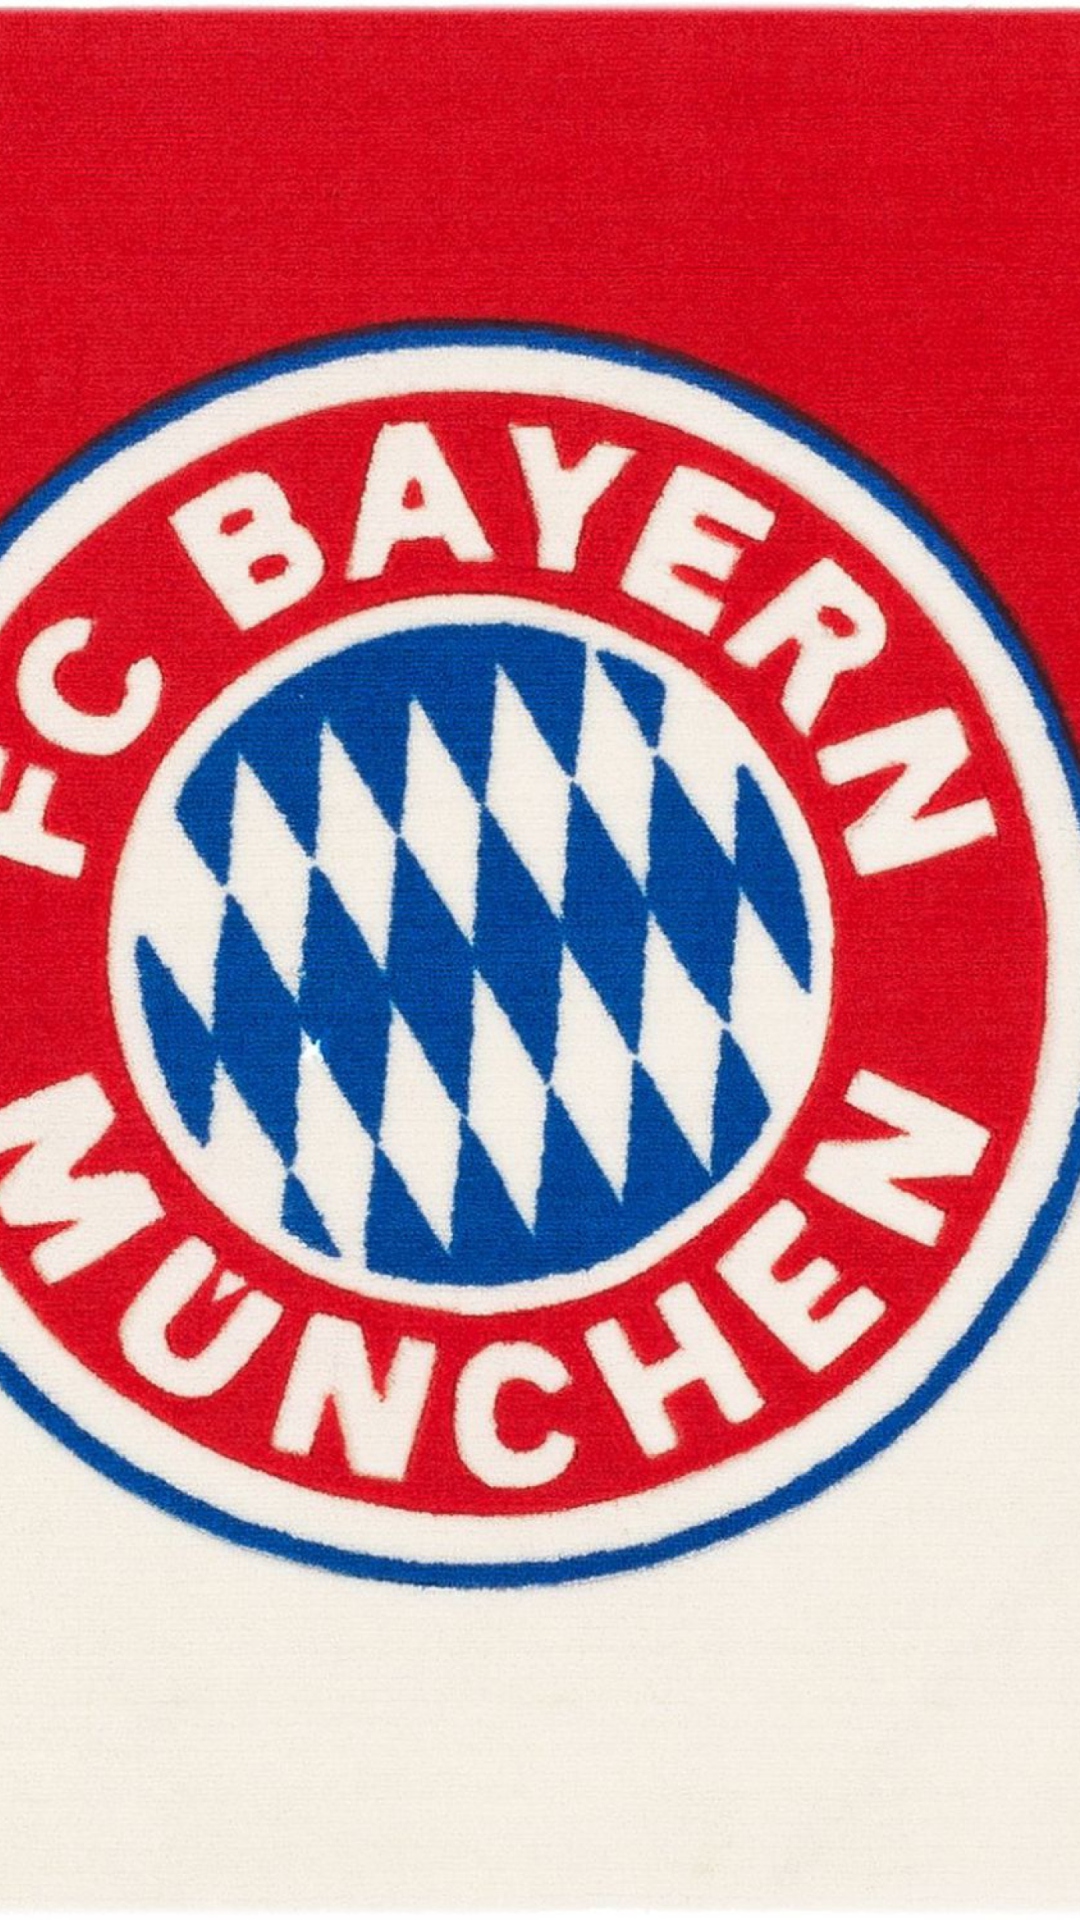 Fc Bayern Munchen screenshot #1 1080x1920